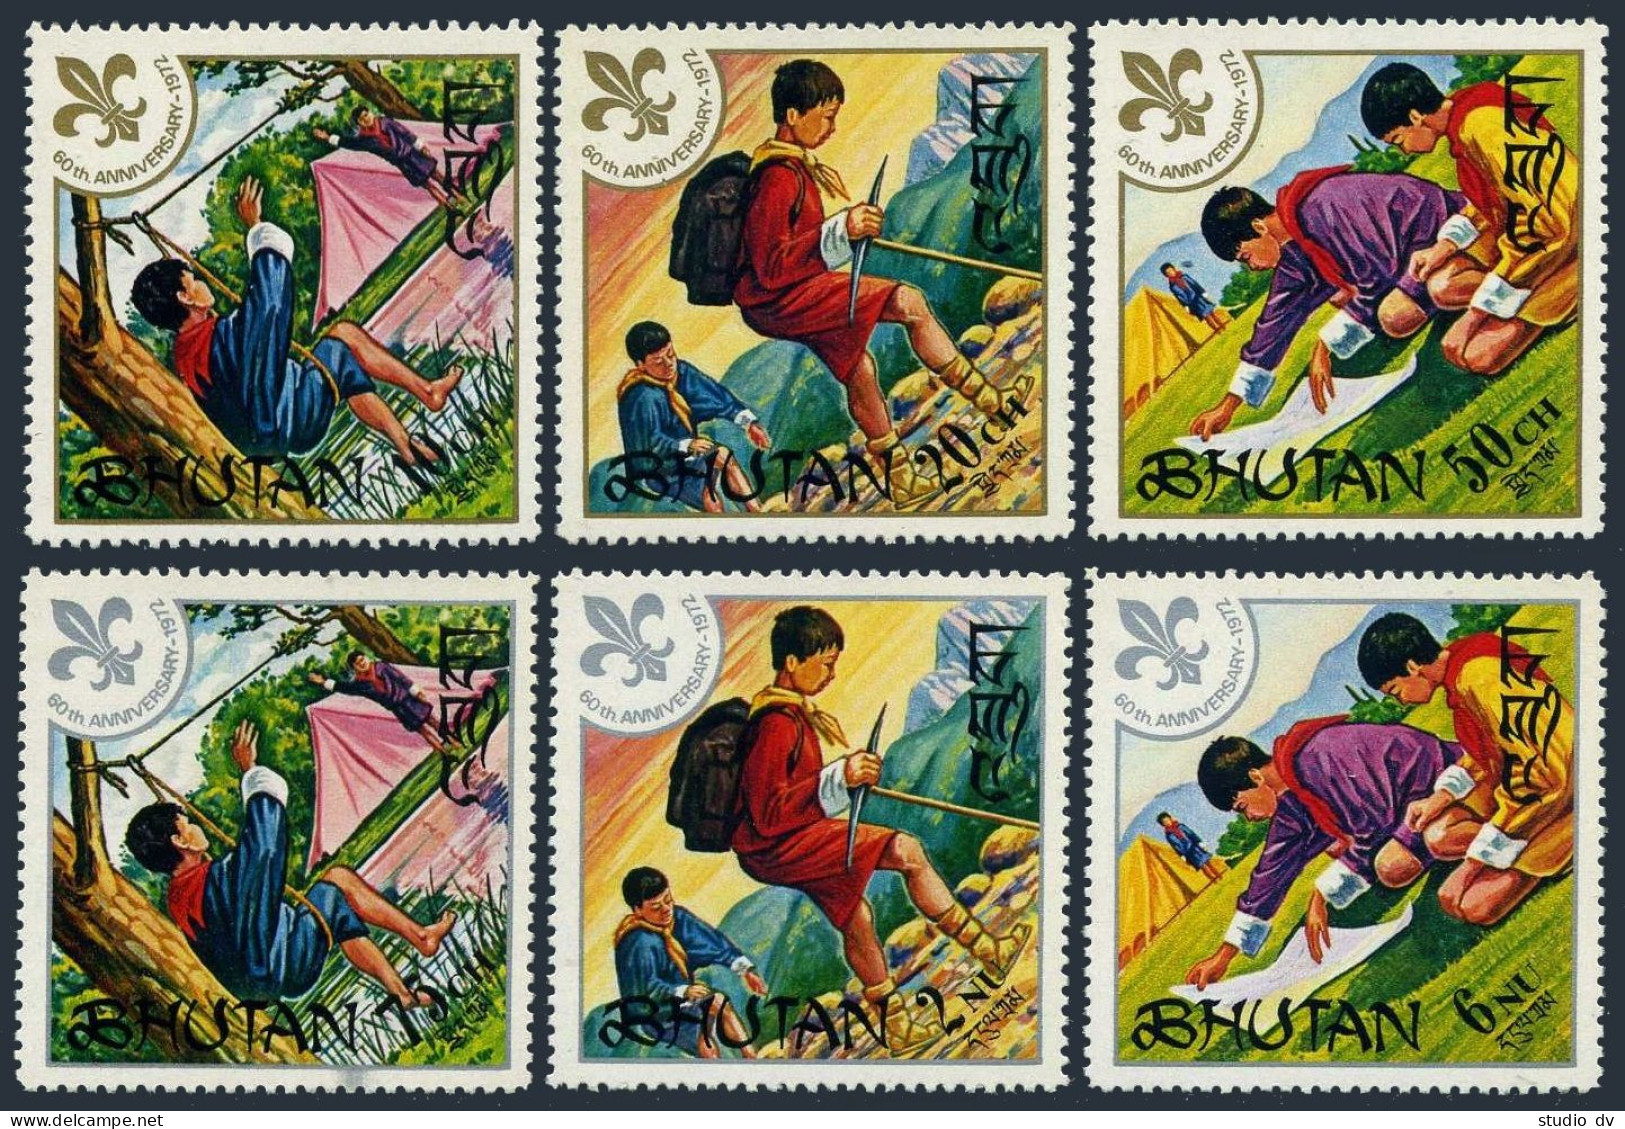 Bhutan 134-139,139a,MNH.Michel 480-485,Bl.47A. Boy Scouts,60th Ann.1972. - Bhoutan